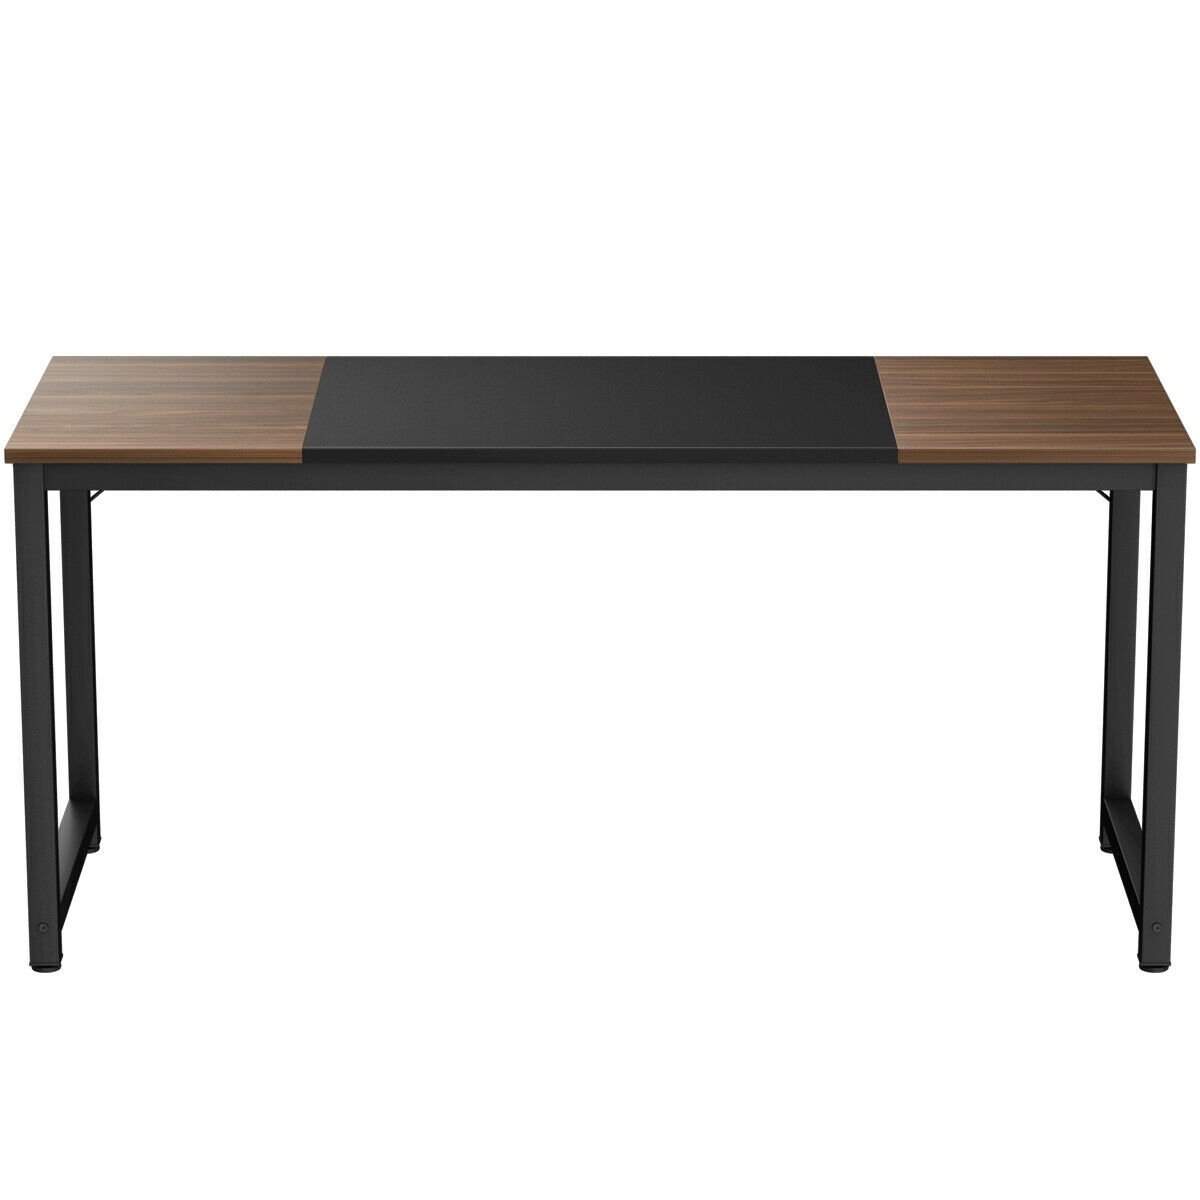 63" Rectangular Dining Room Table with Solid Metal Frame-Desktop + Frame, Black